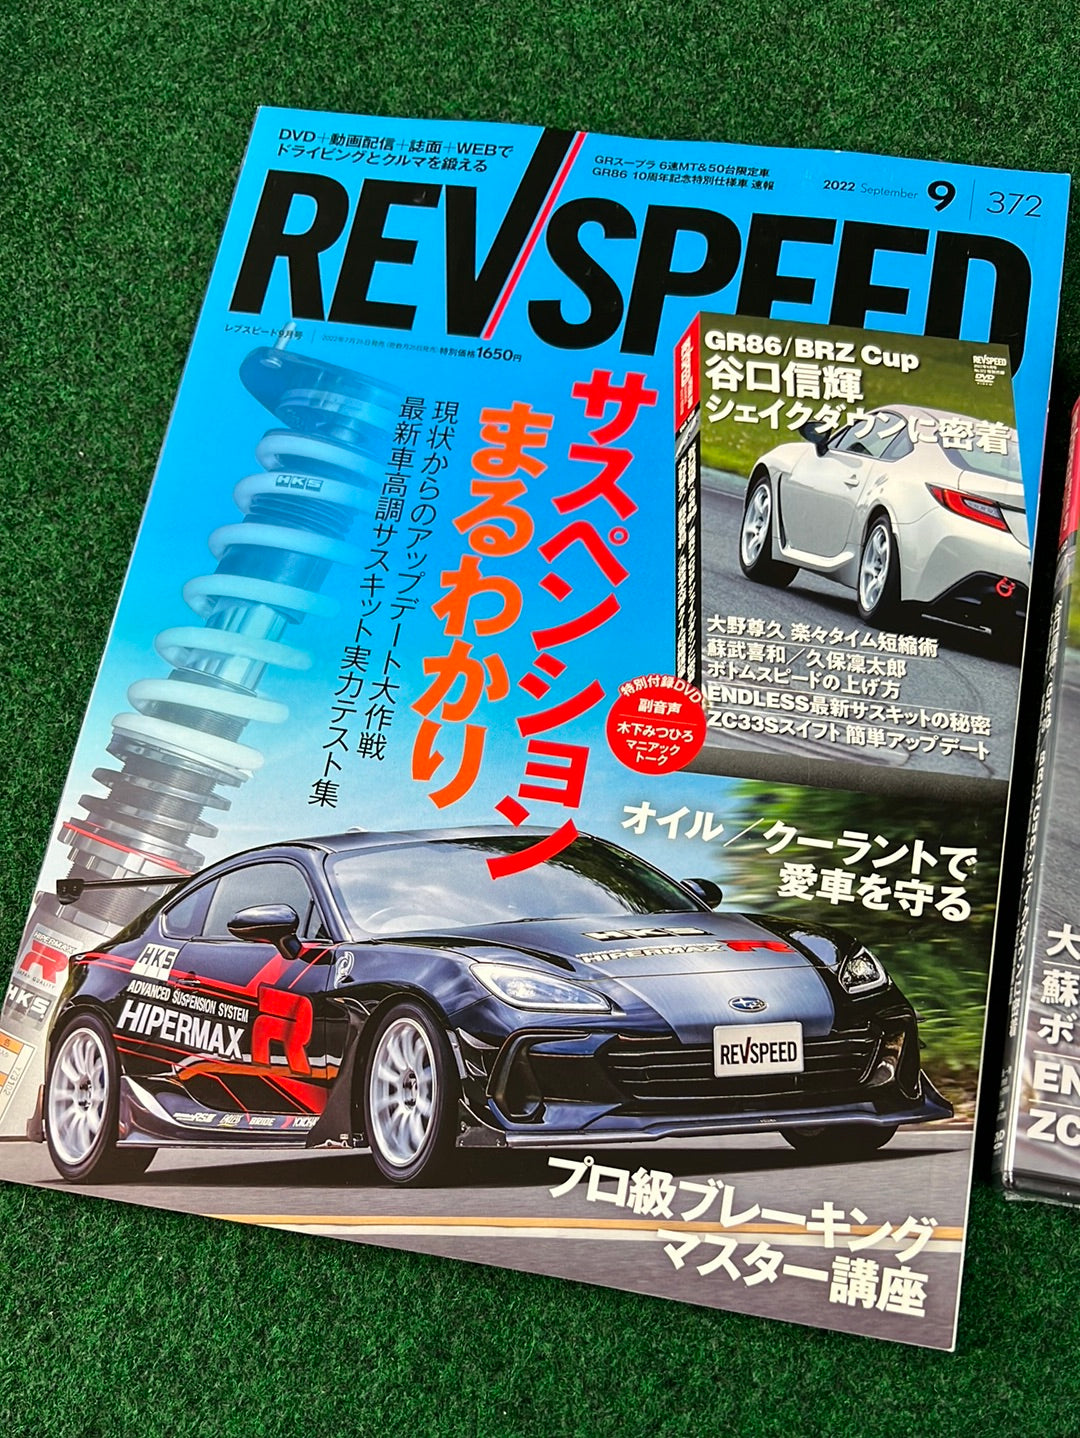 REVSPEED Magazine & DVD - September 2022